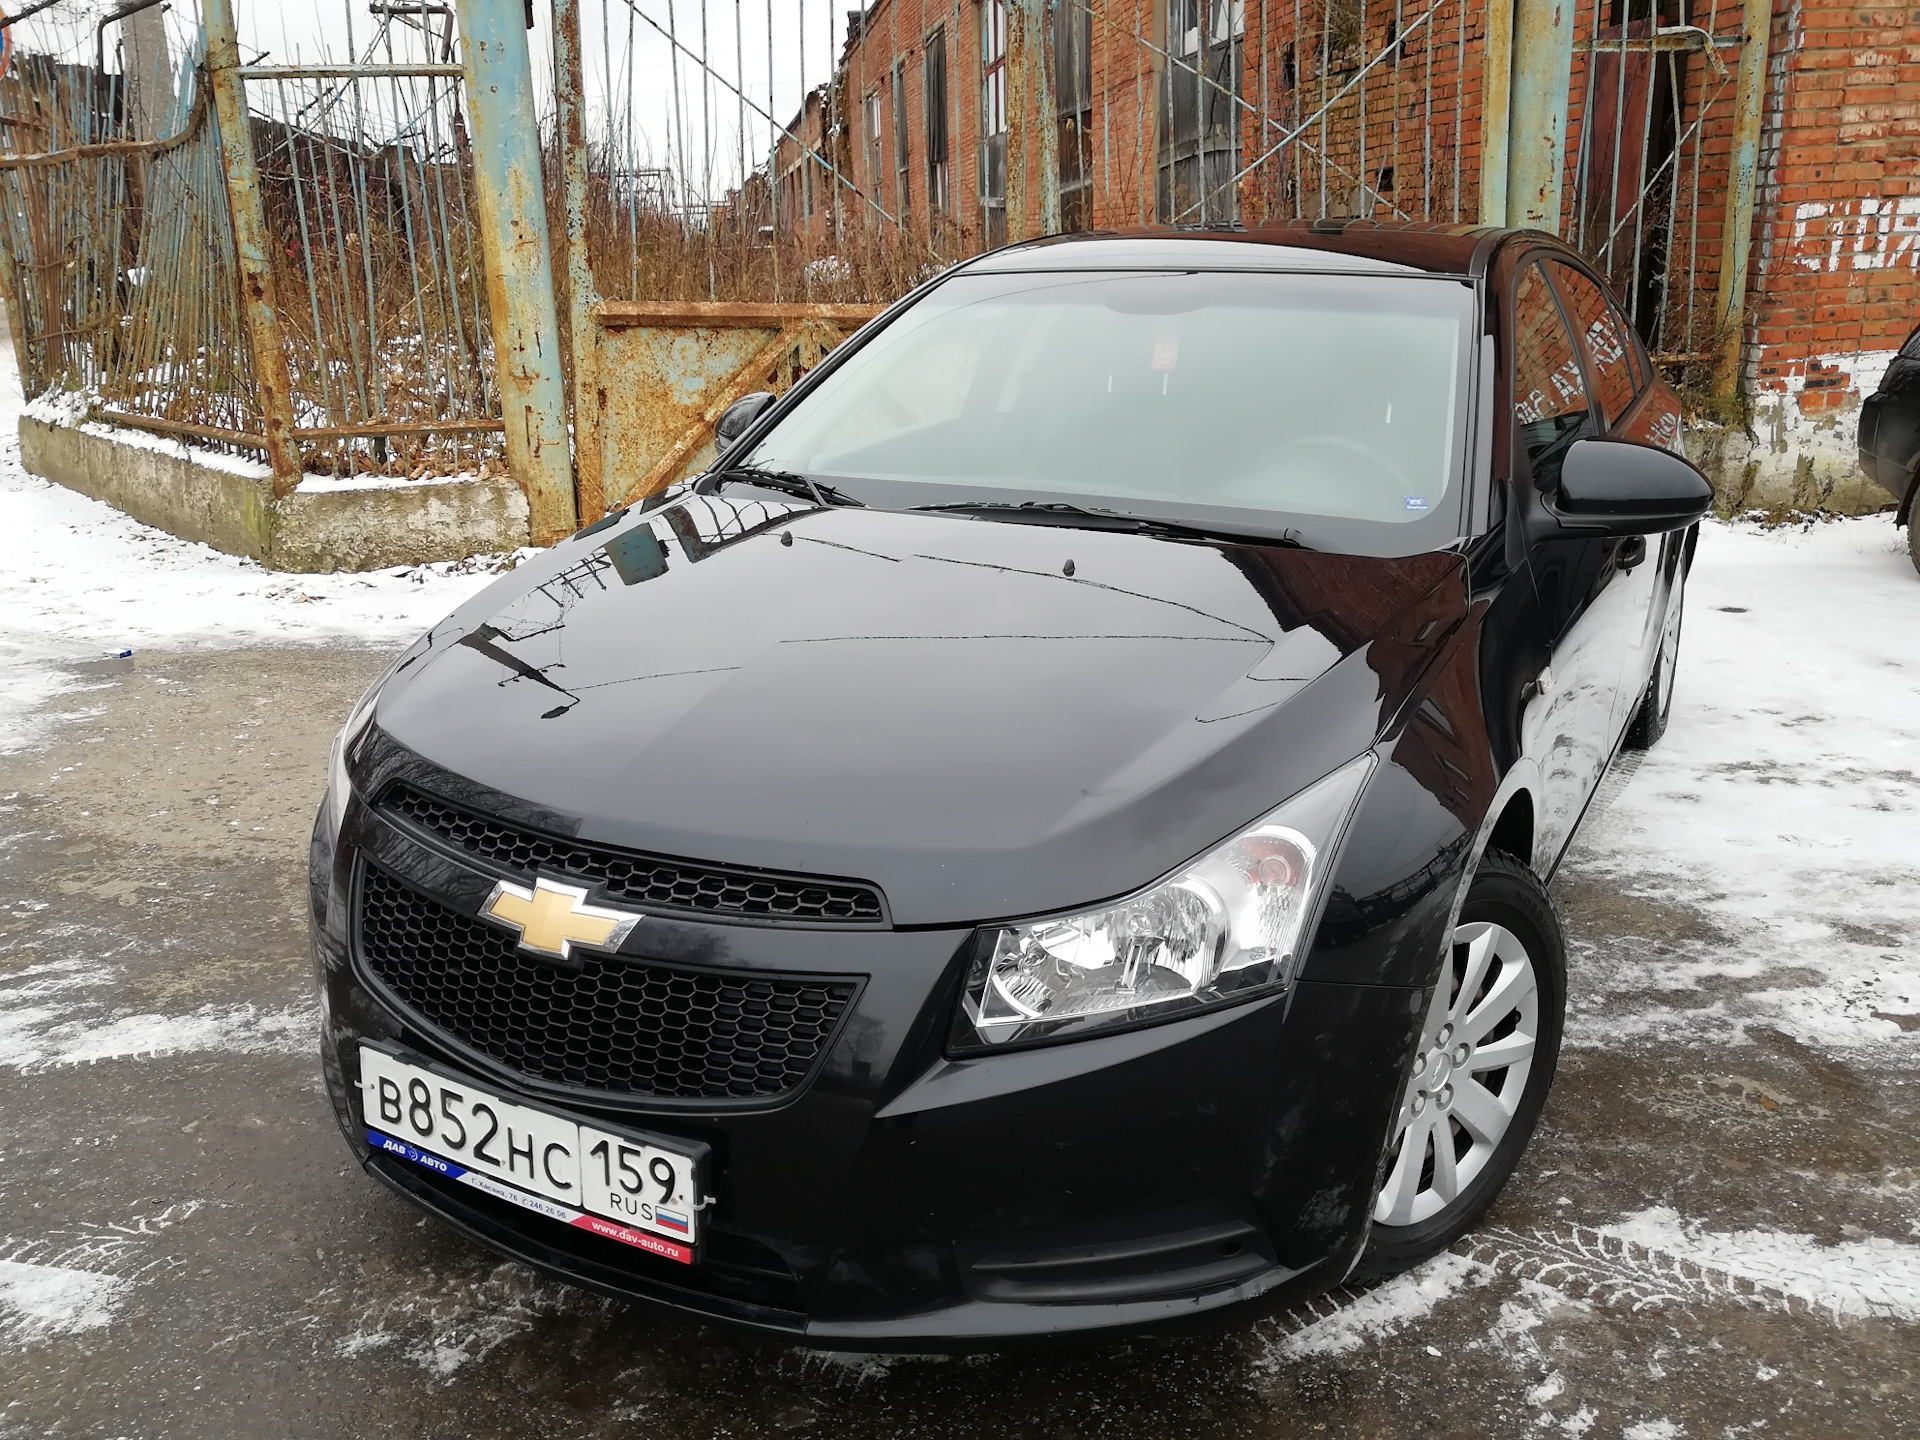 Солик машина. Авито Соликамск авто с пробегом. Купить машину в Соликамске.